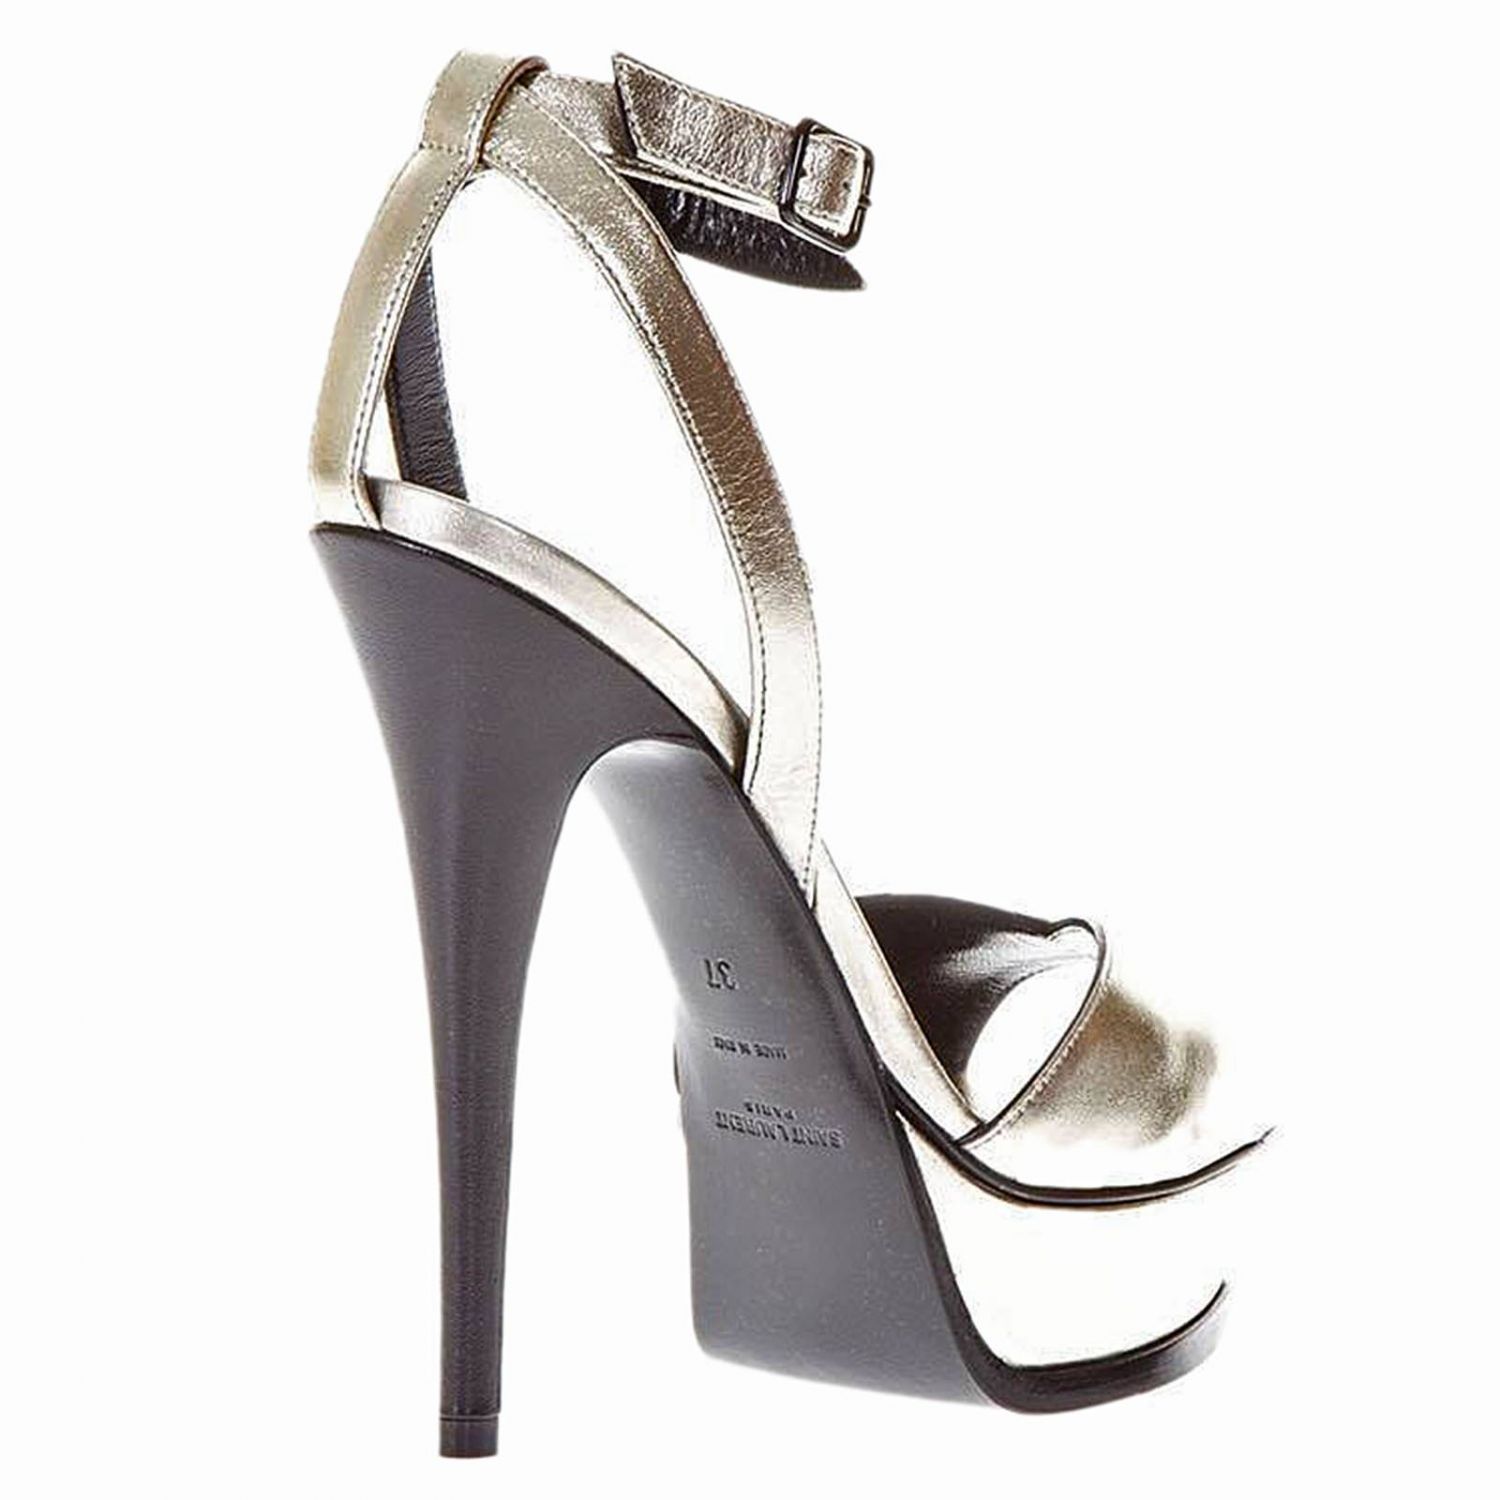 SAINT LAURENT: Shoes women | Heeled Sandals Saint Laurent Women ...